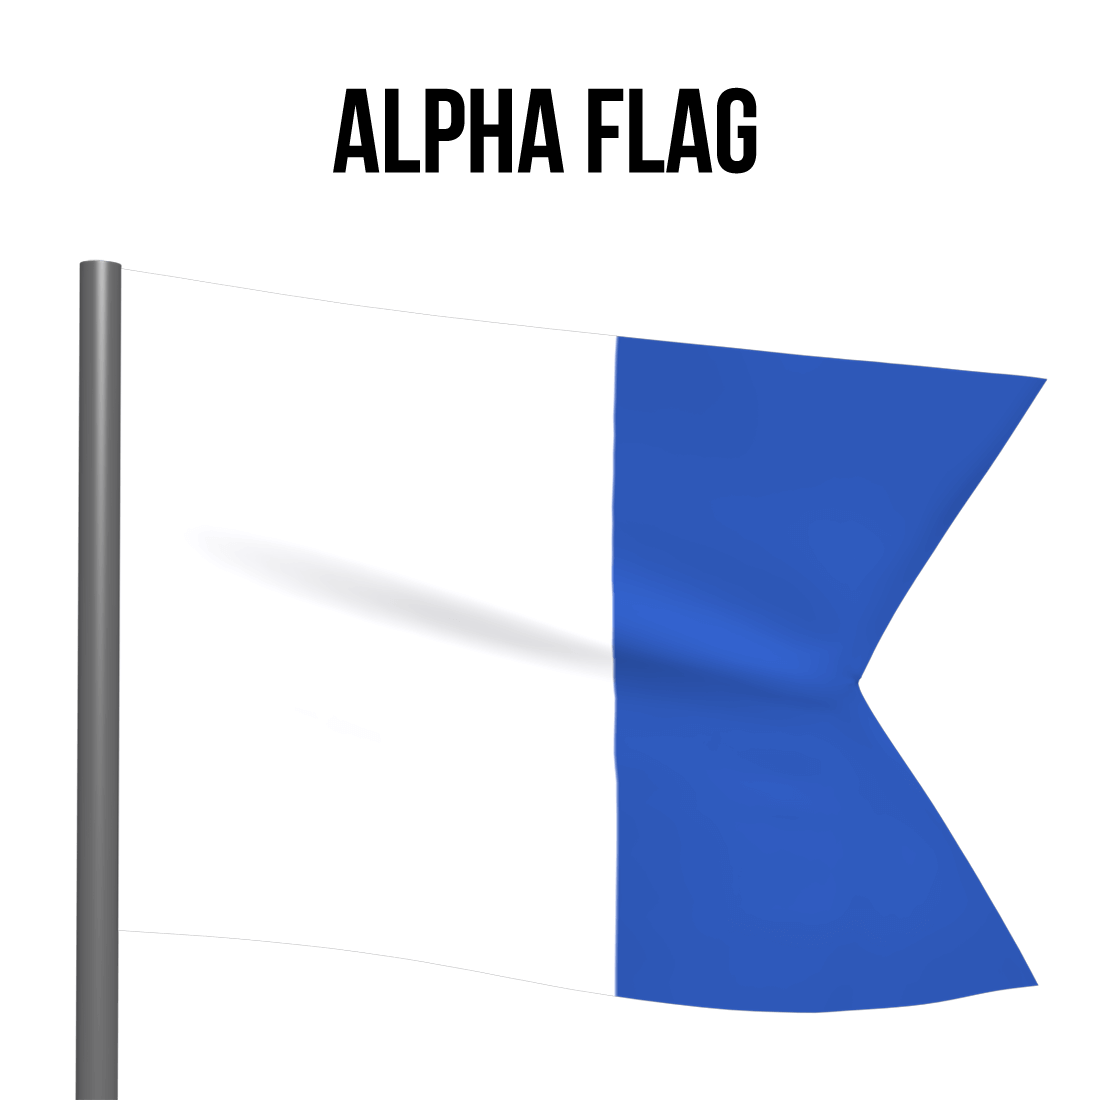 Alpha flag - blue and white flag